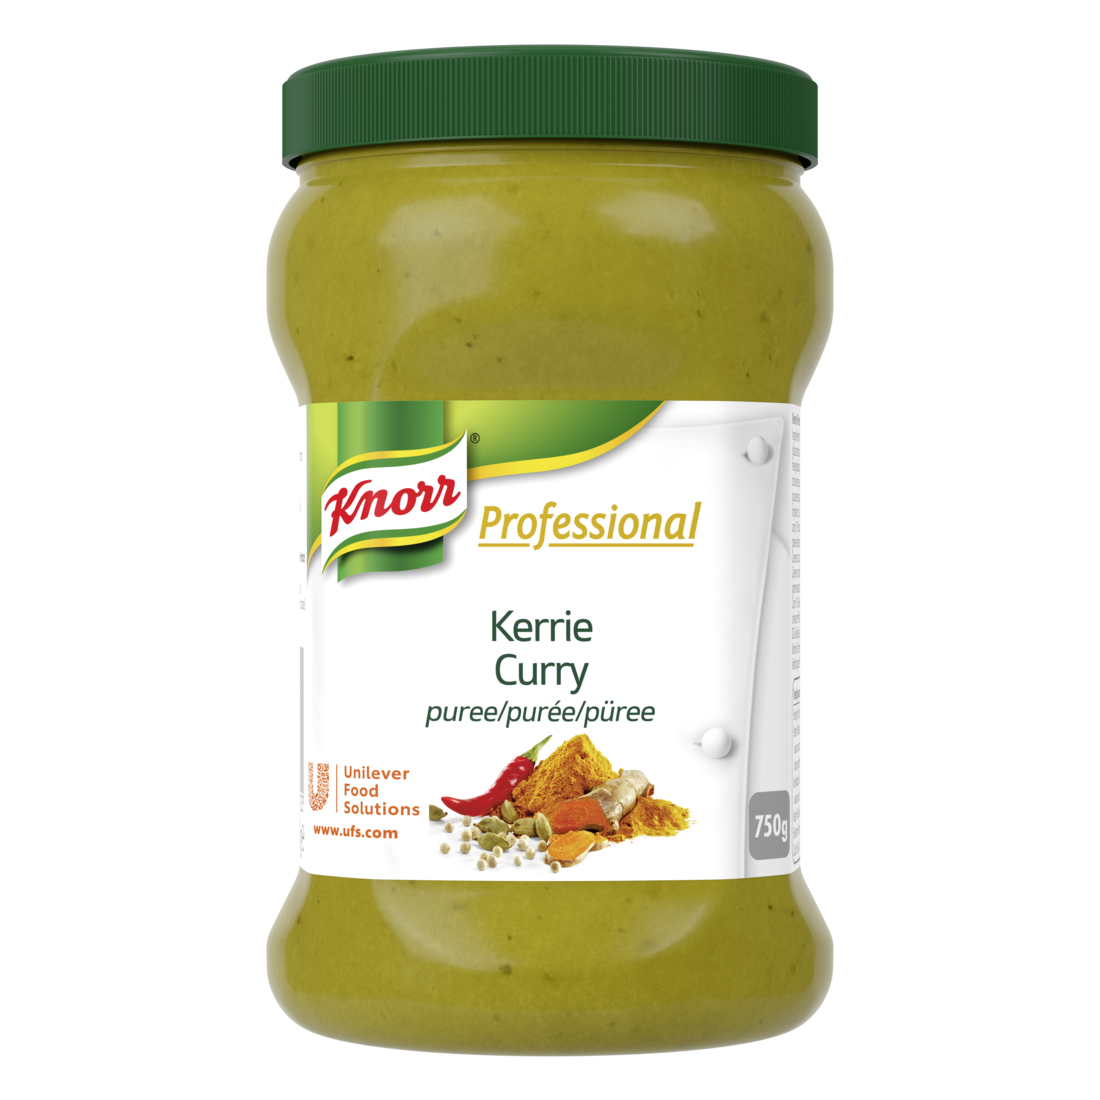 Knorr Professional Purée de curry pot 750g - Knorr Purée d’Épices parfume et personnalise vos plats.